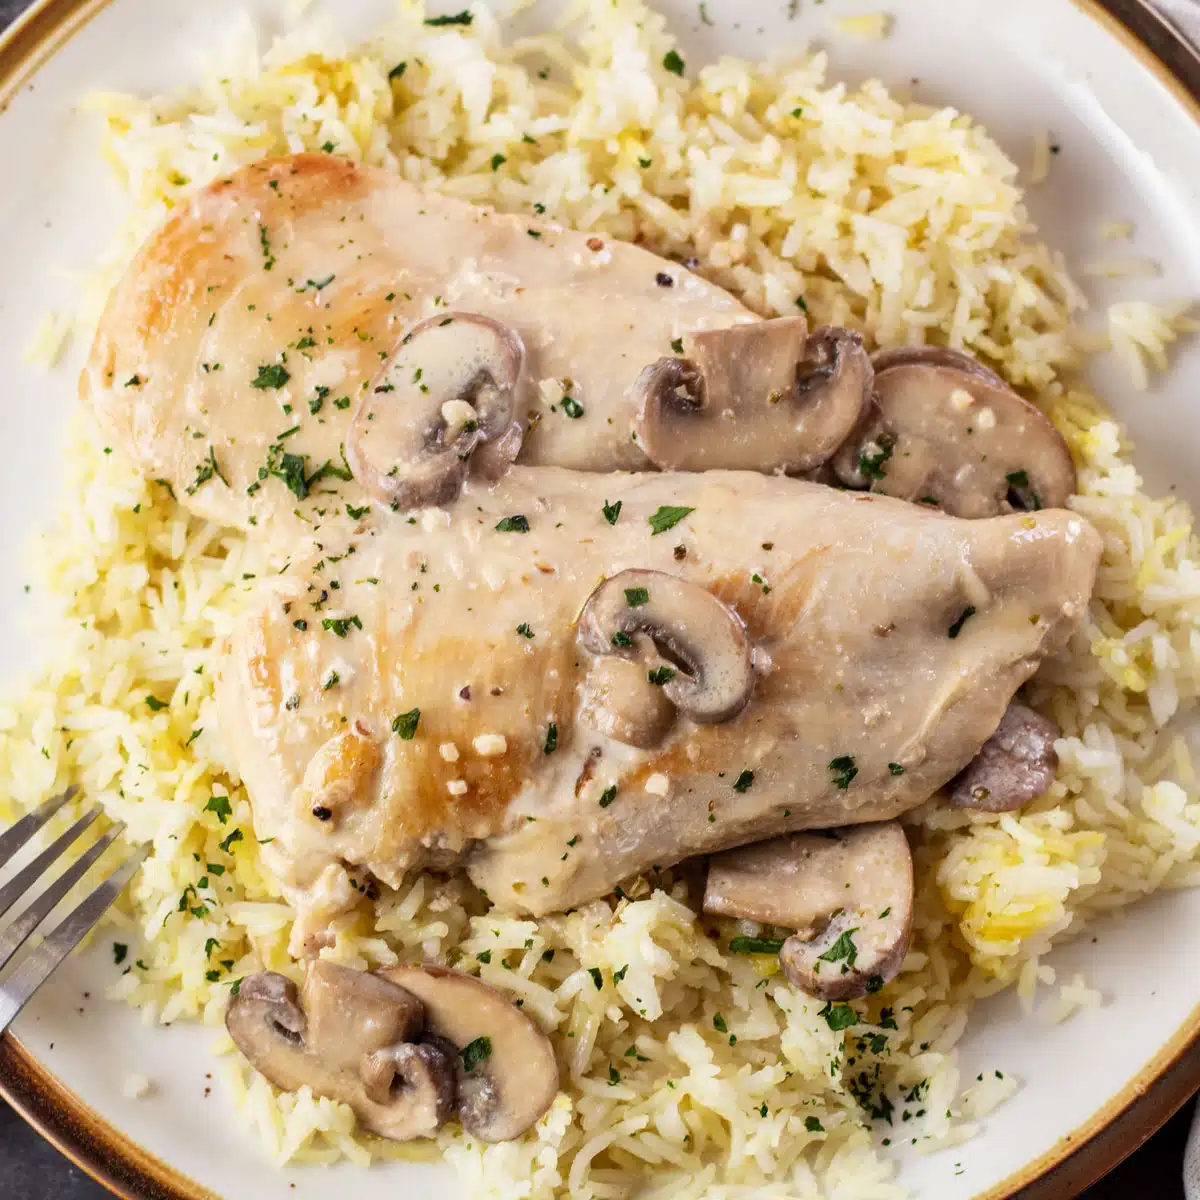 Kvadratna slika piletine s gljivama preko riže na tanjuru.